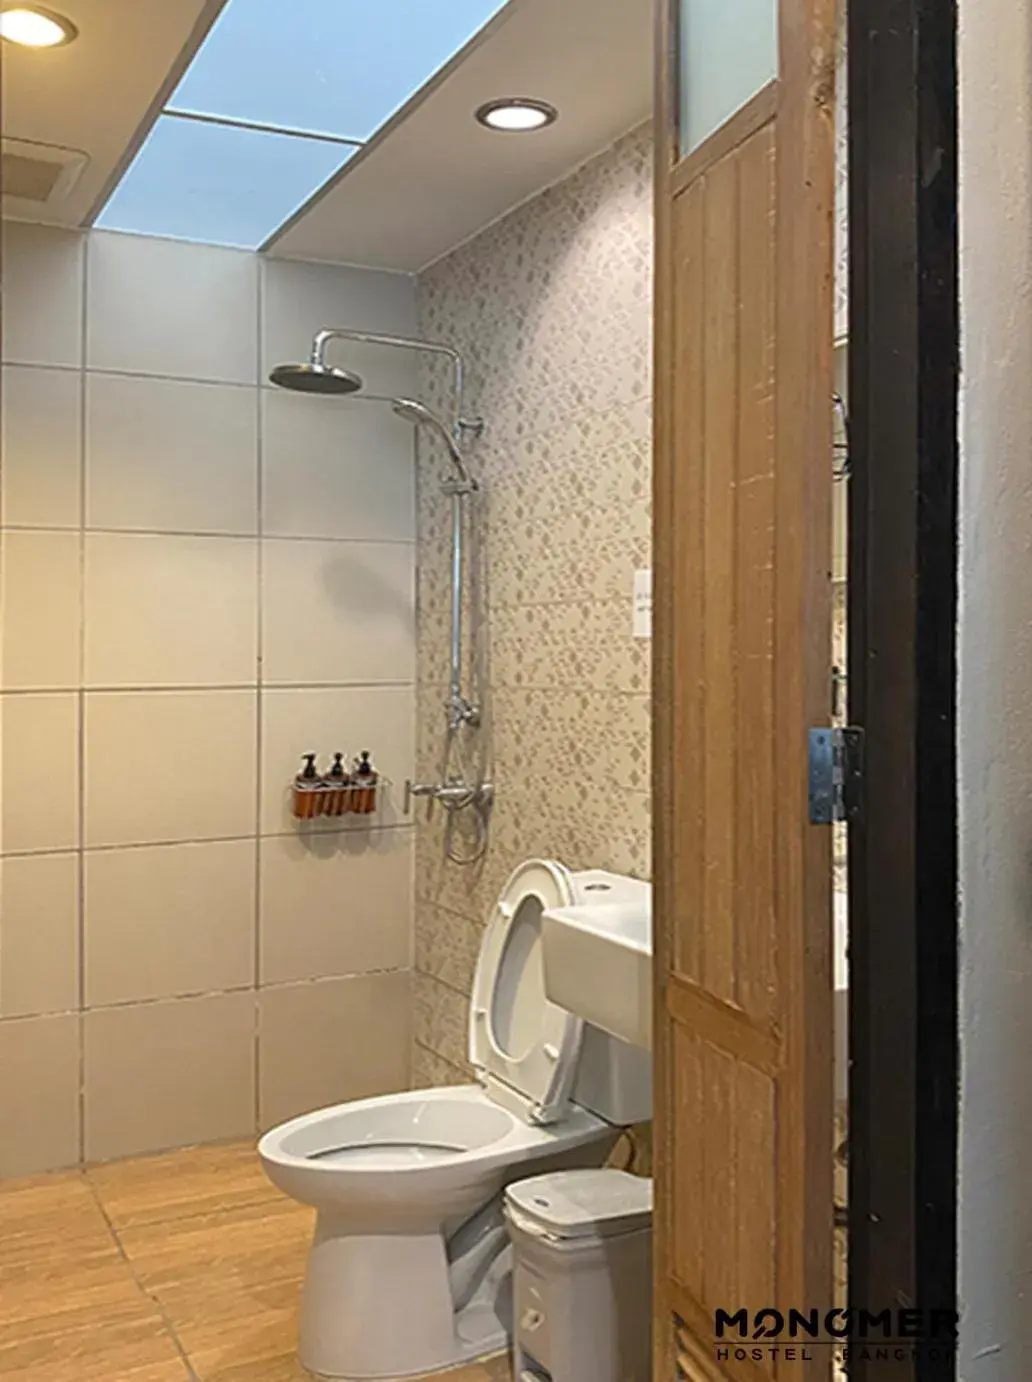 Shower, Bathroom in Monomer Hostel